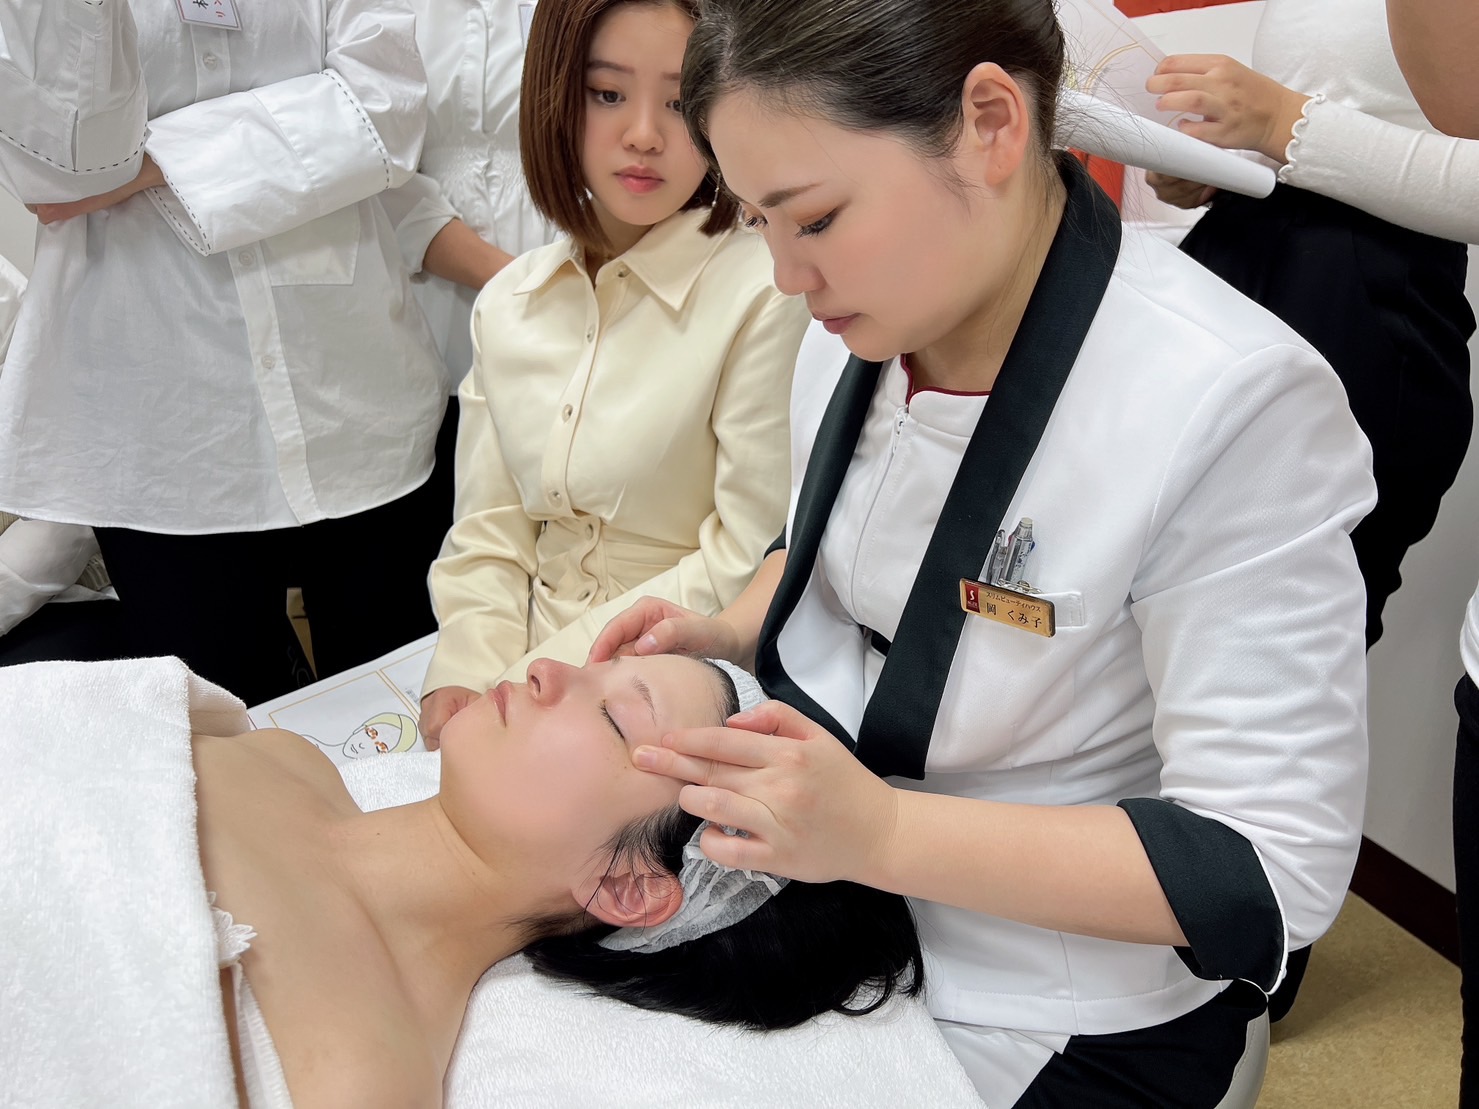 崑大時尚系引進日本美容技術專業 帶領專業美容師赴日研習